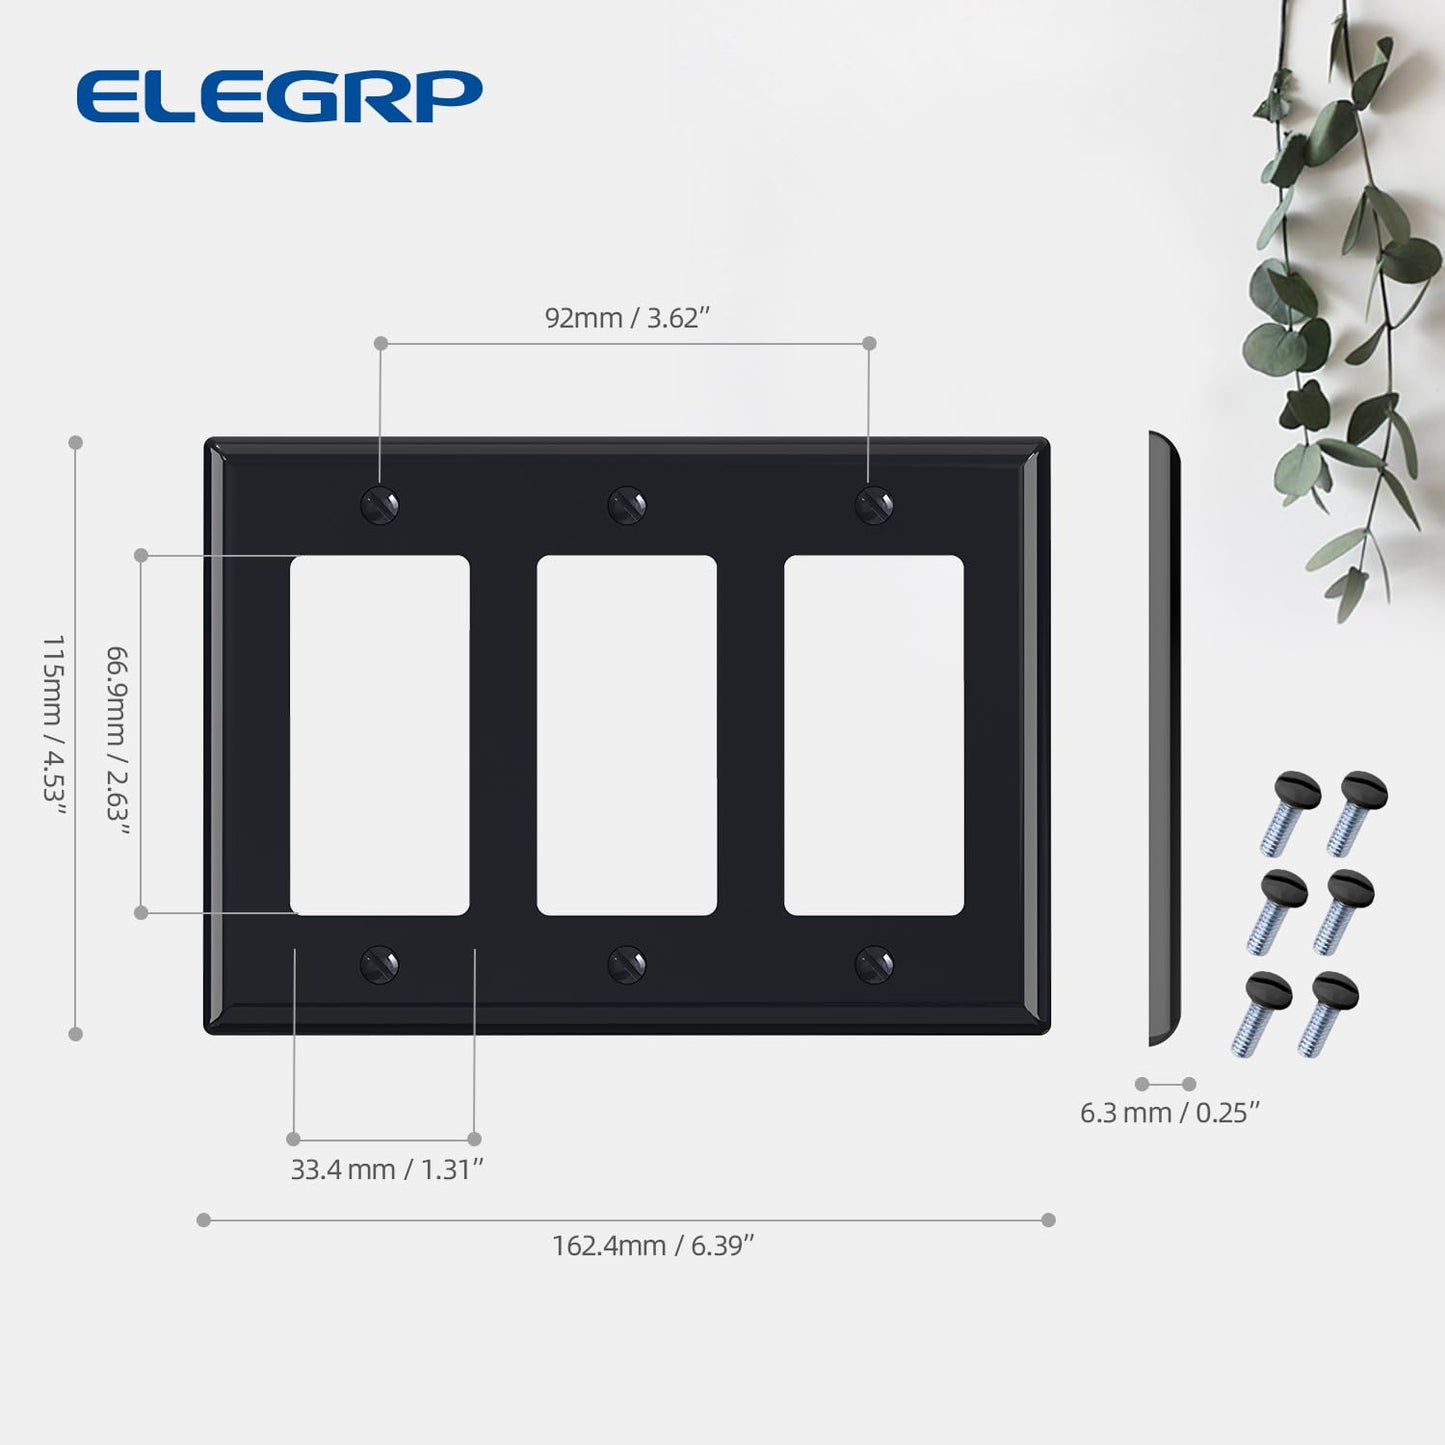 ELEGRP 1-Gang 2-Gang 3-Gang Decorative Wall Plates, (5 Pack)